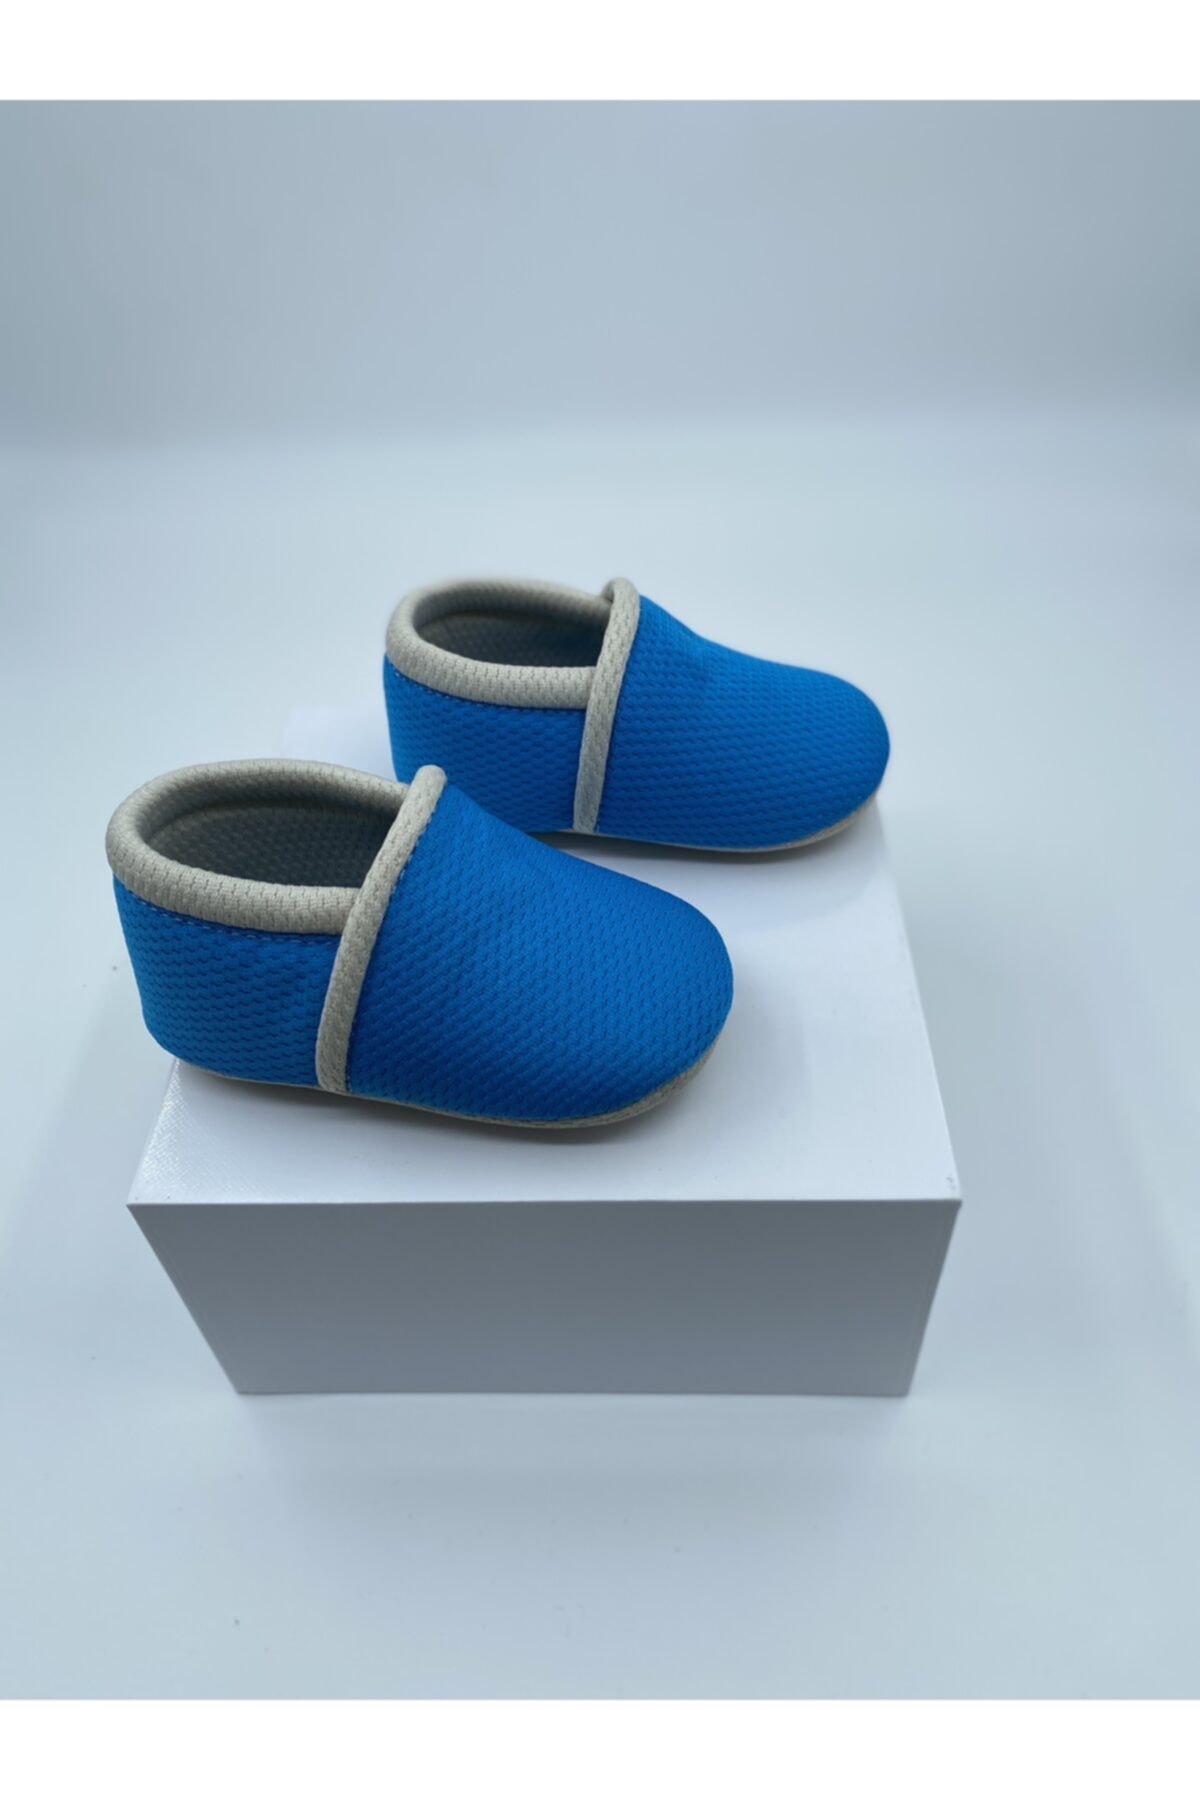 candyron Bebek Bez Ayakkabı - 3 Katmanlı - Mavi